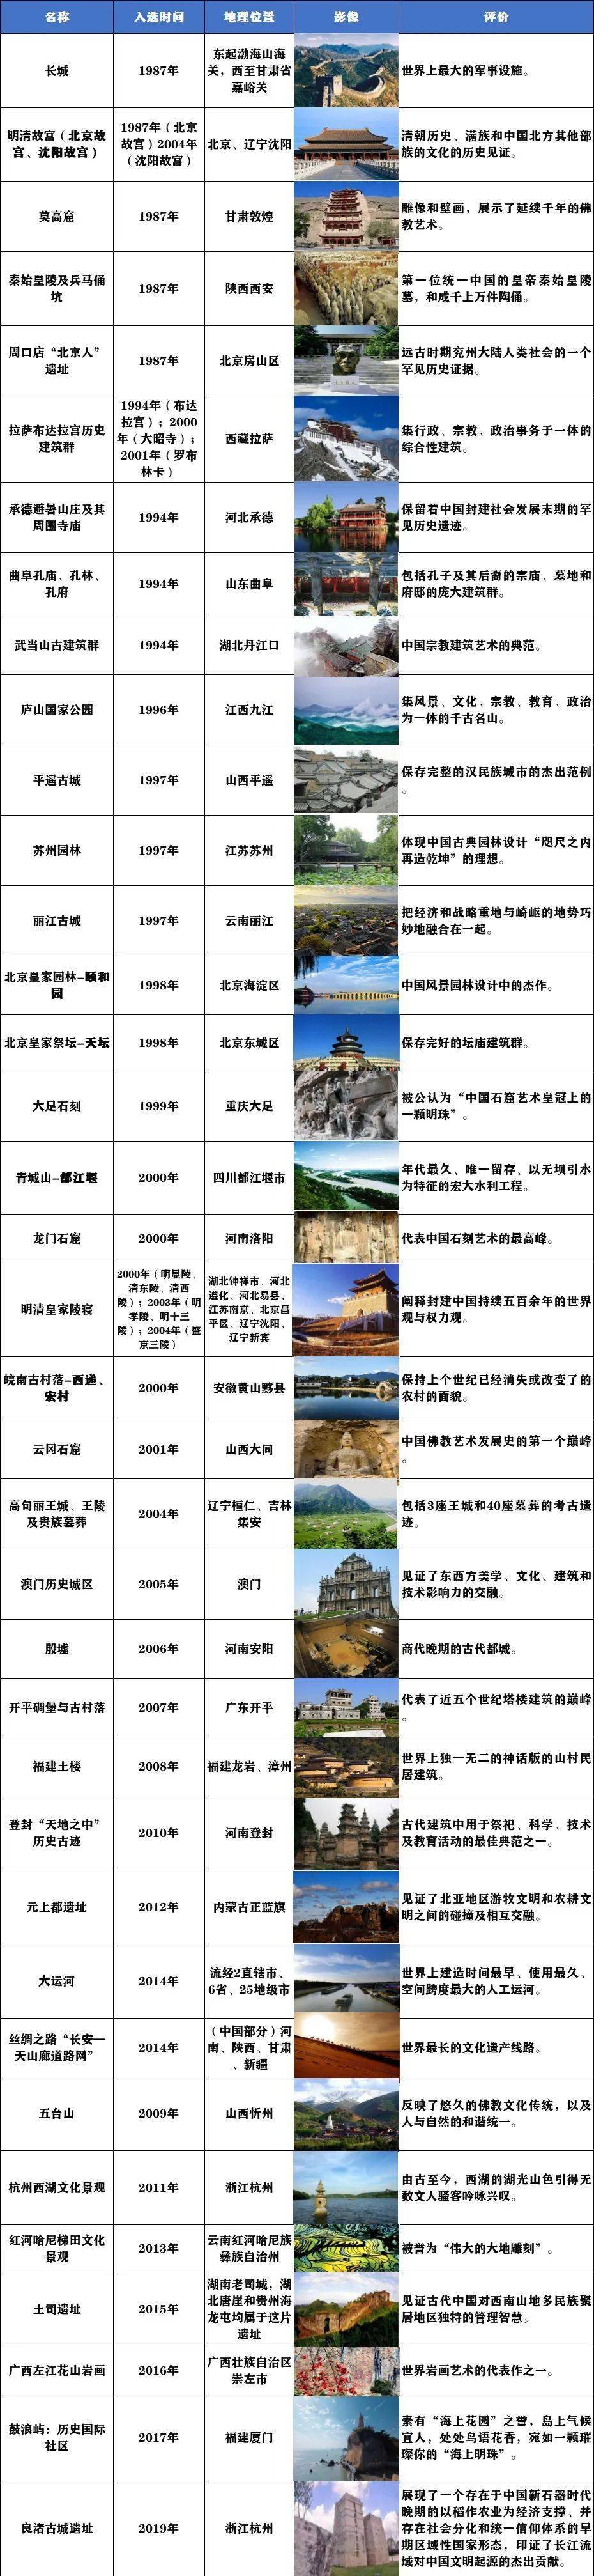 中国世界文化遗产资料图片